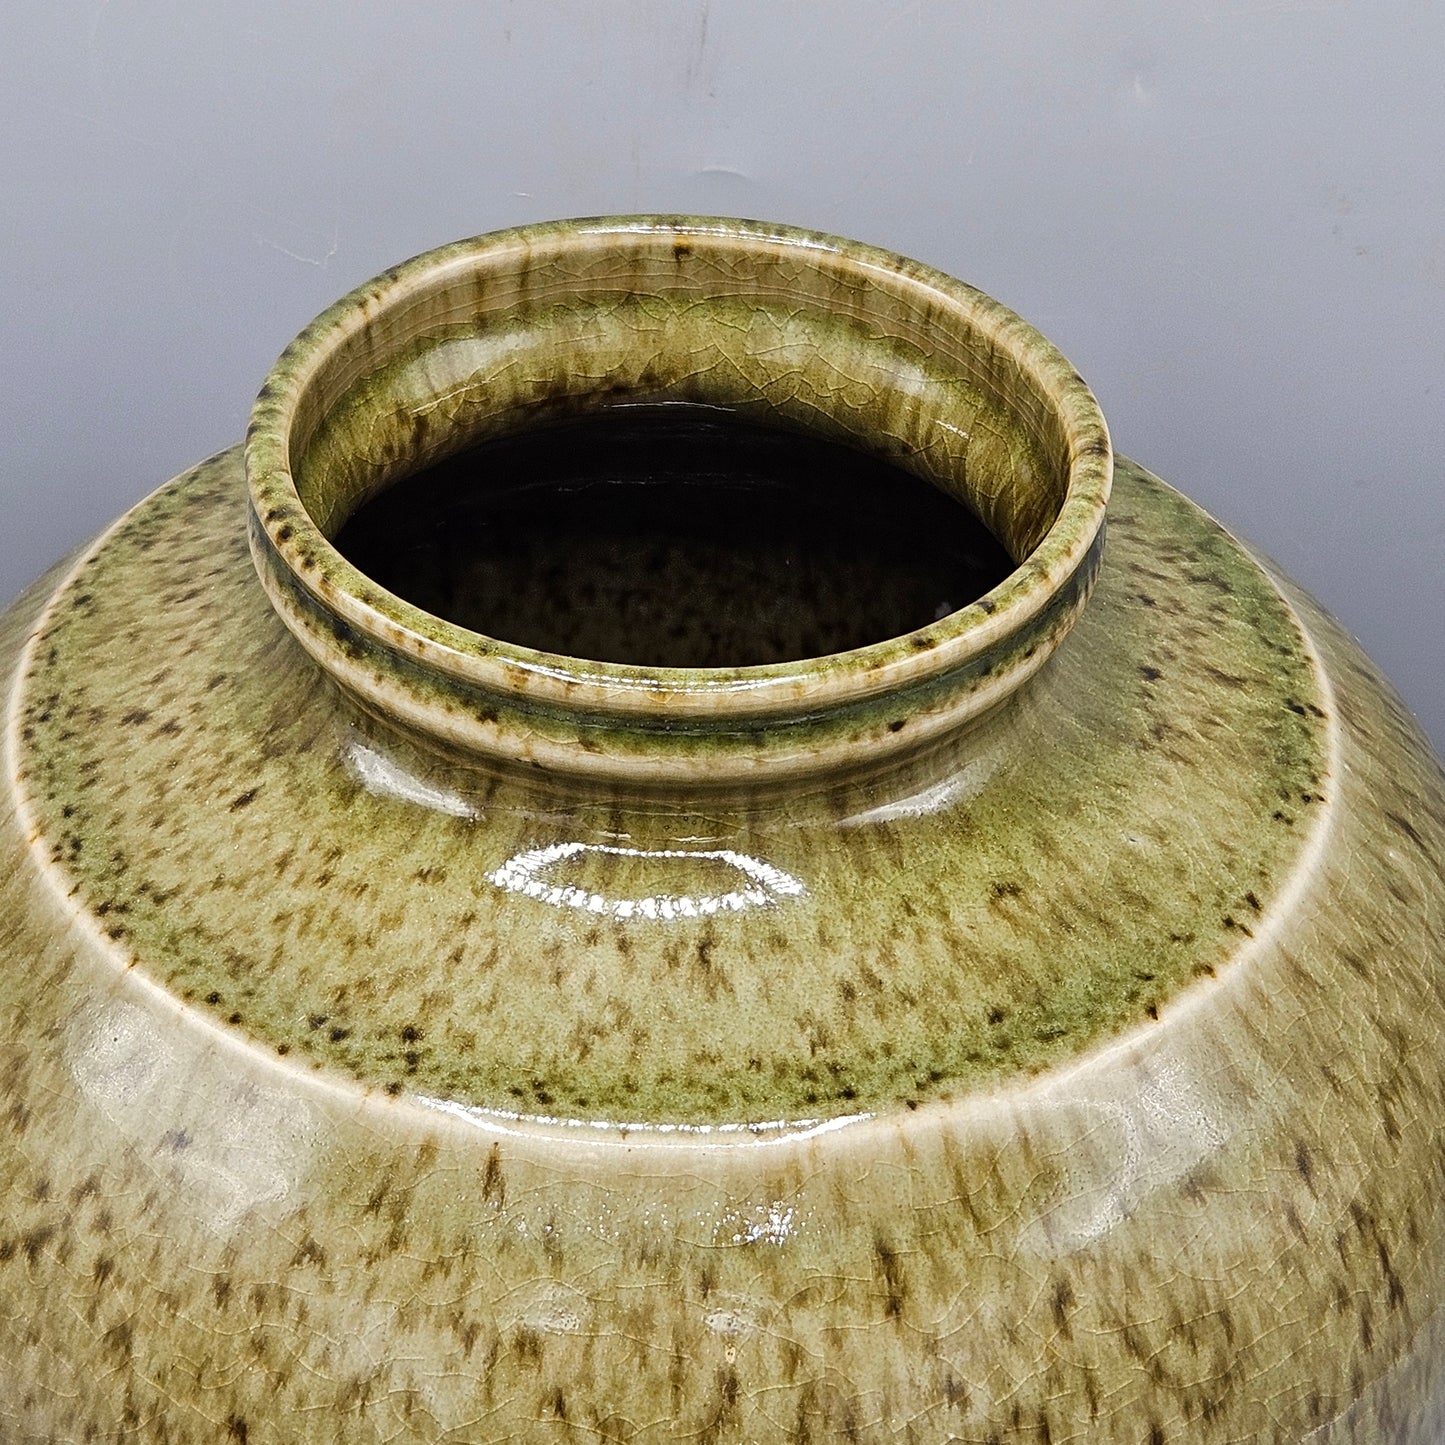 Vintage Green Ceramic Ginger Jar with Bronze Lid